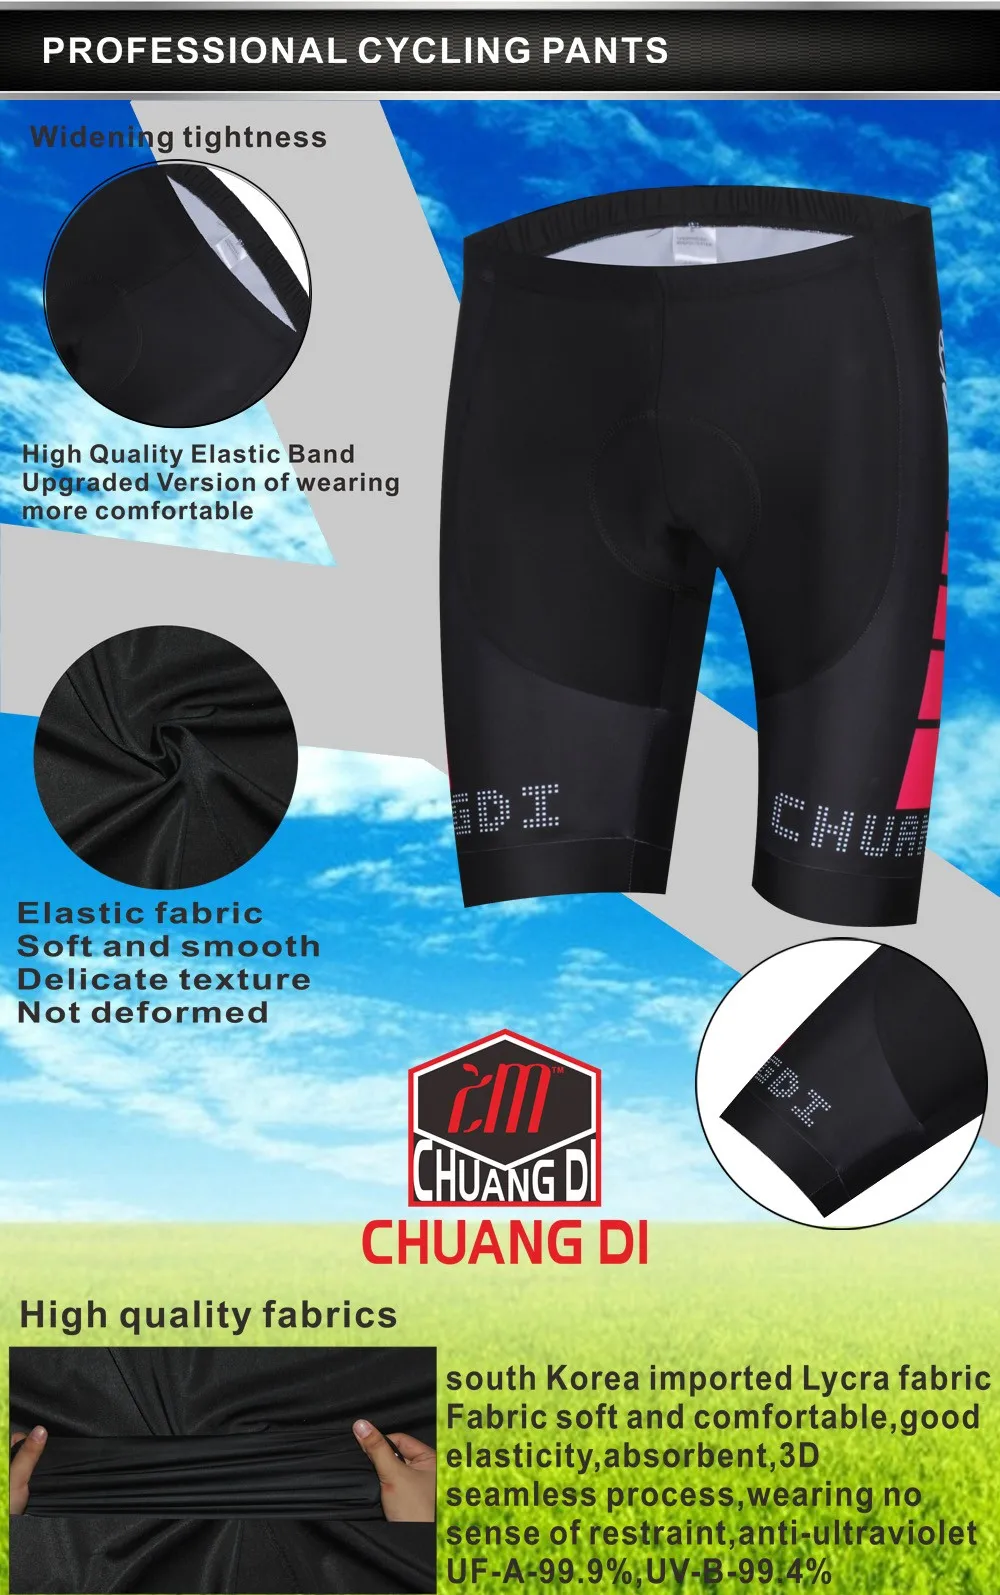 ZM chuangdi Велоспорт Джерси Короткие костюмы для мужчин летняя велосипедная одежда цветная одежда для горного велосипеда Riding езда спортивная одежда